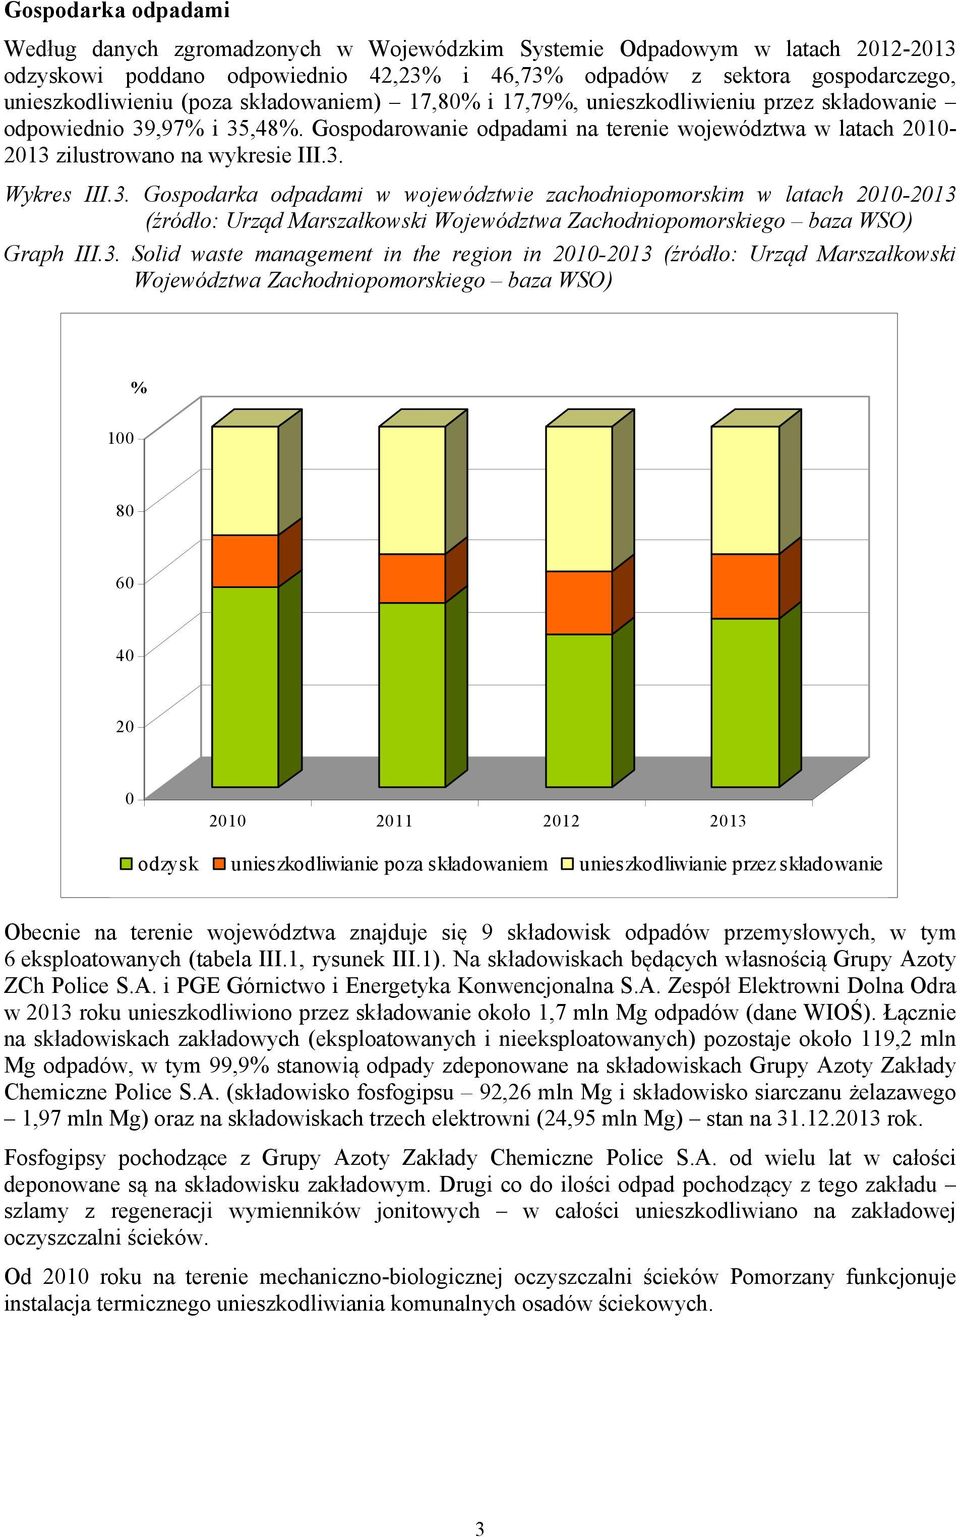 3. Gospodarka odpadami w województwie zachodniopomorskim w latach 2010-2013 (źródło: Urząd Marszałkowski Województwa Zachodniopomorskiego baza WSO) Graph III.3. Solid waste management in the region